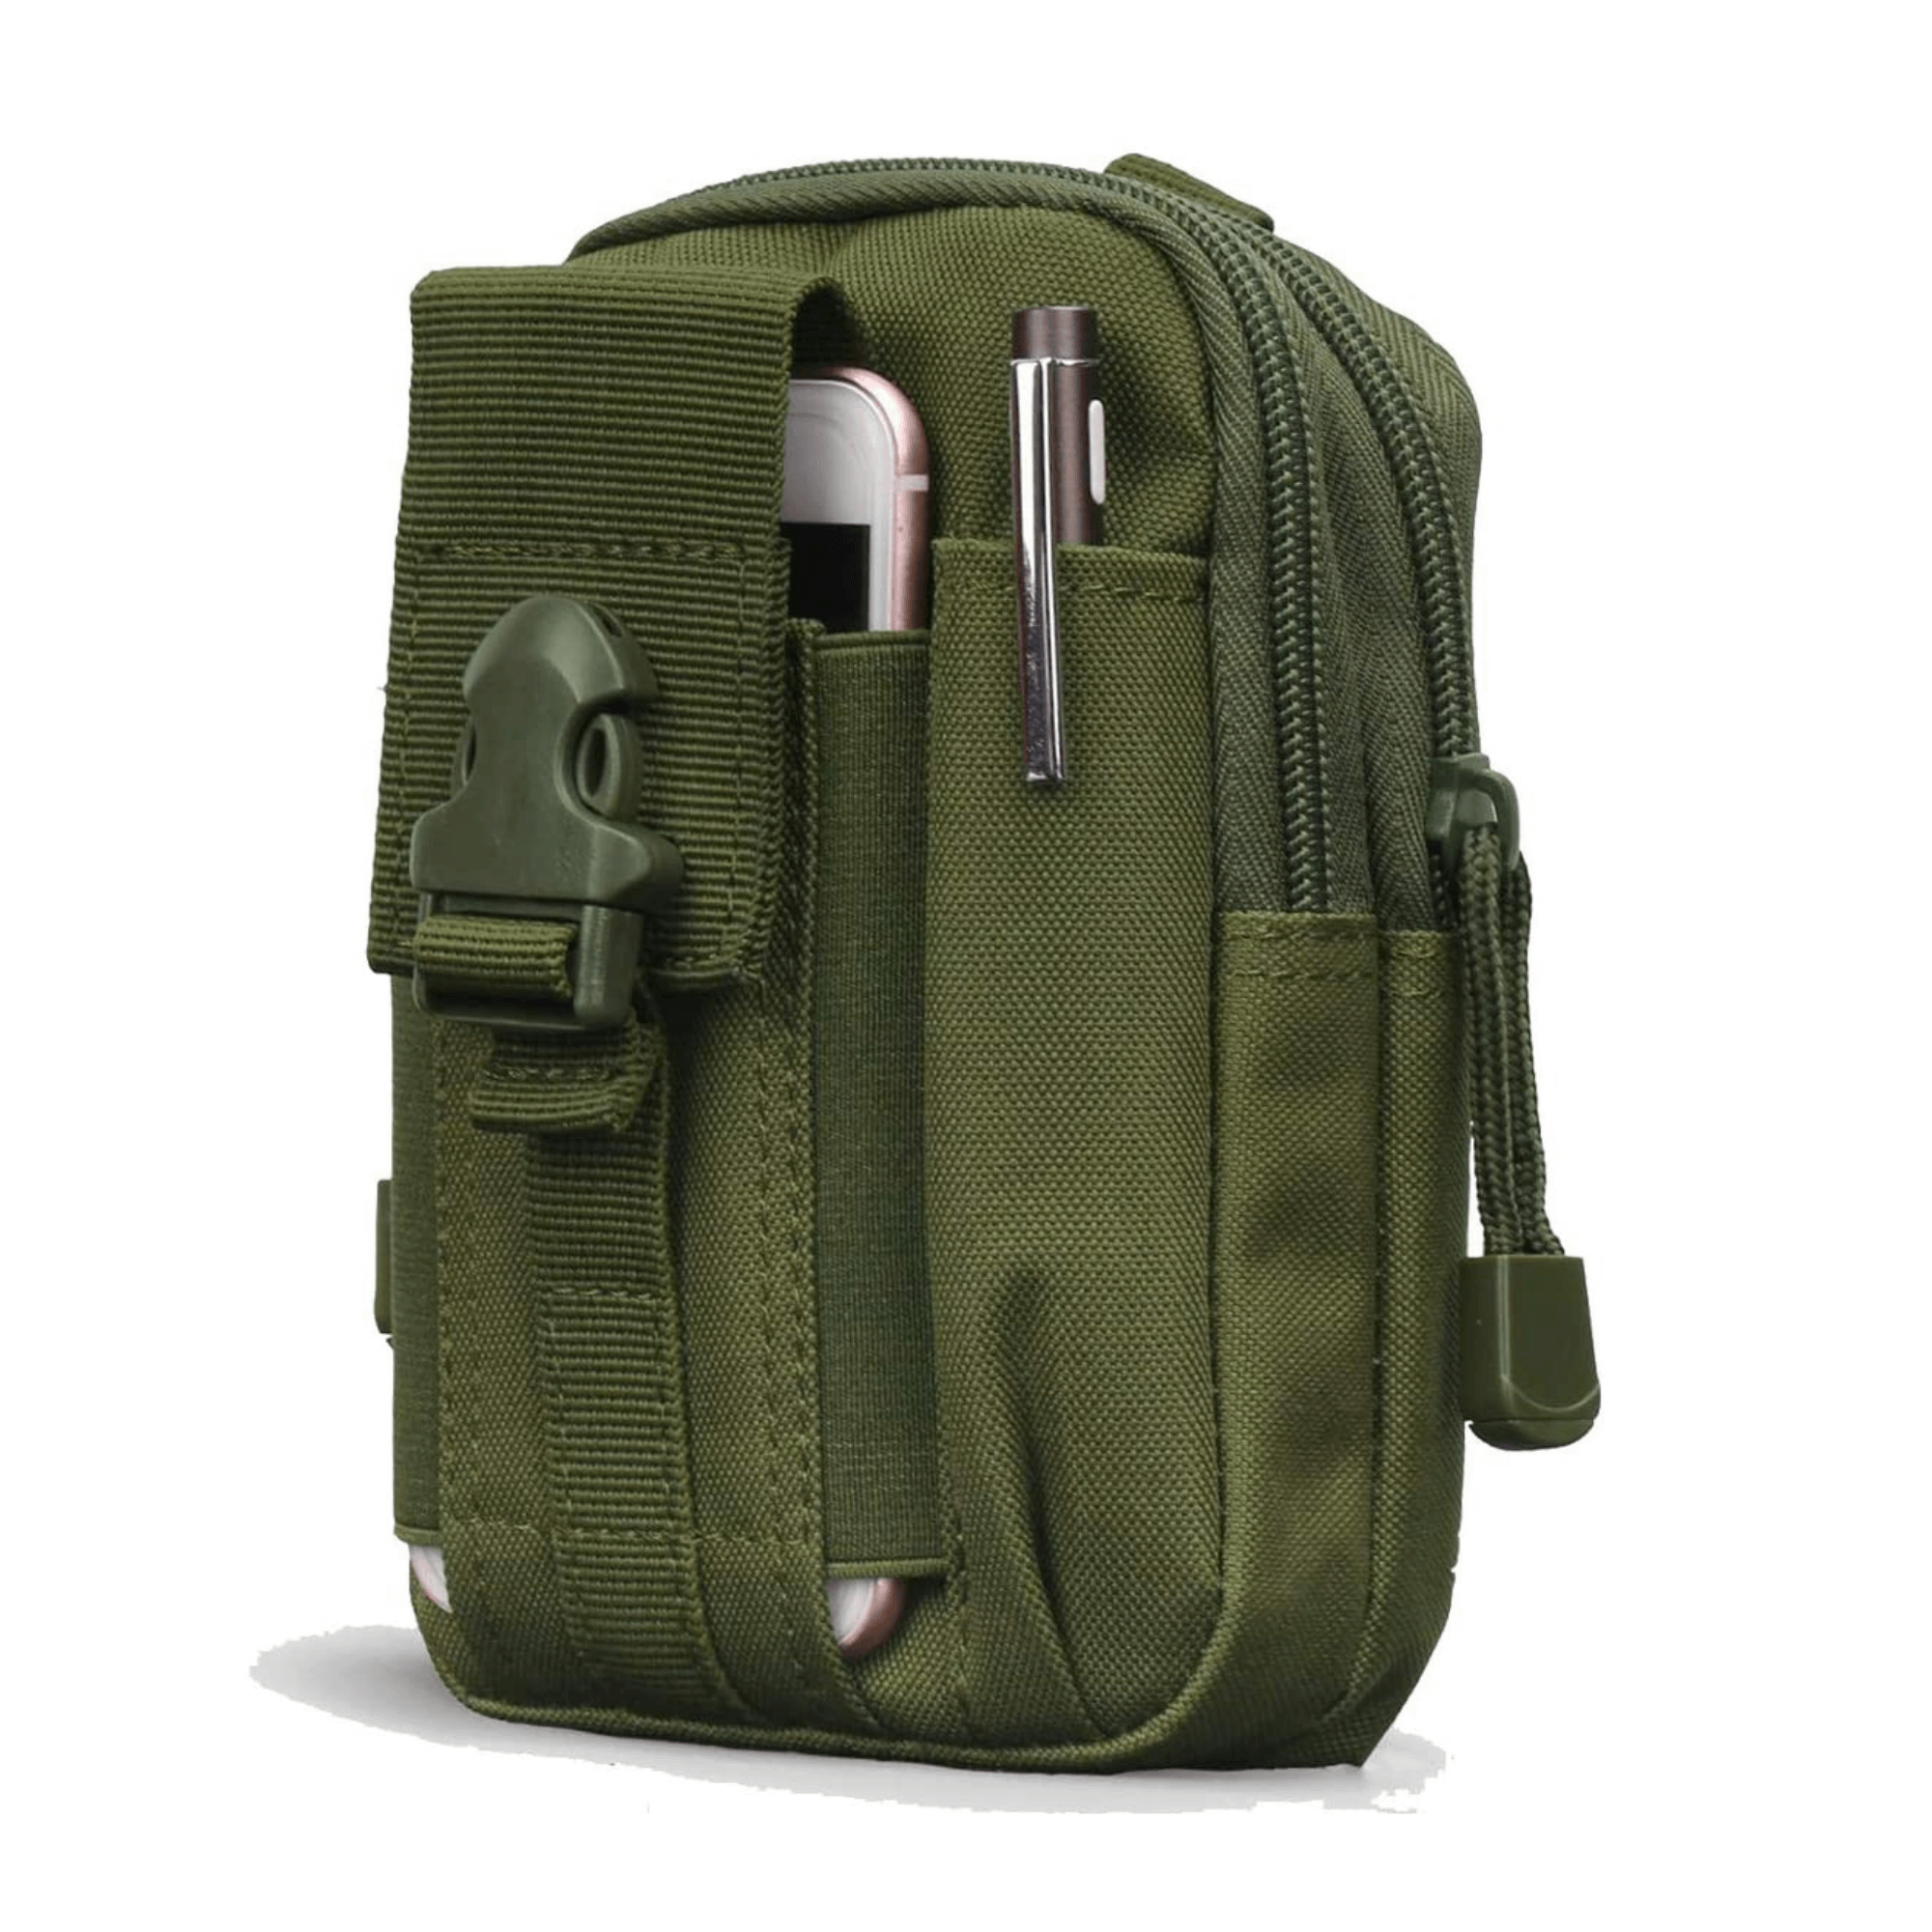 Hiking & Outdoor Tactical Pouch & Waist Bag - Team Spirit Store USA 